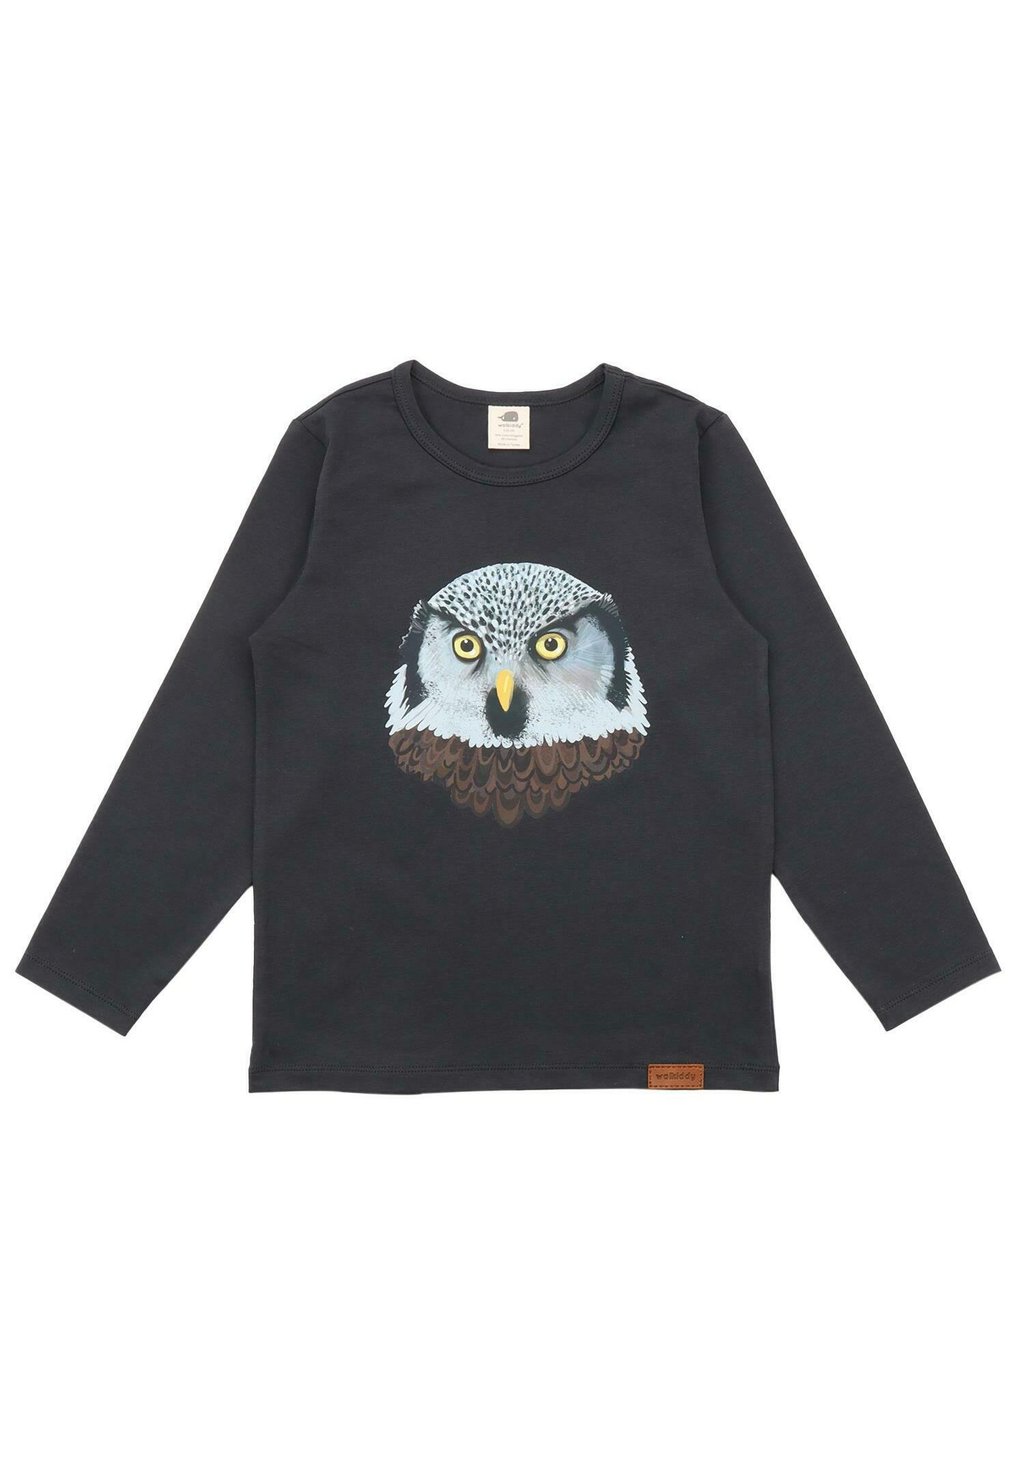 Рубашка с длинным рукавом OWL FRIENDS Walkiddy, цвет anthrazit